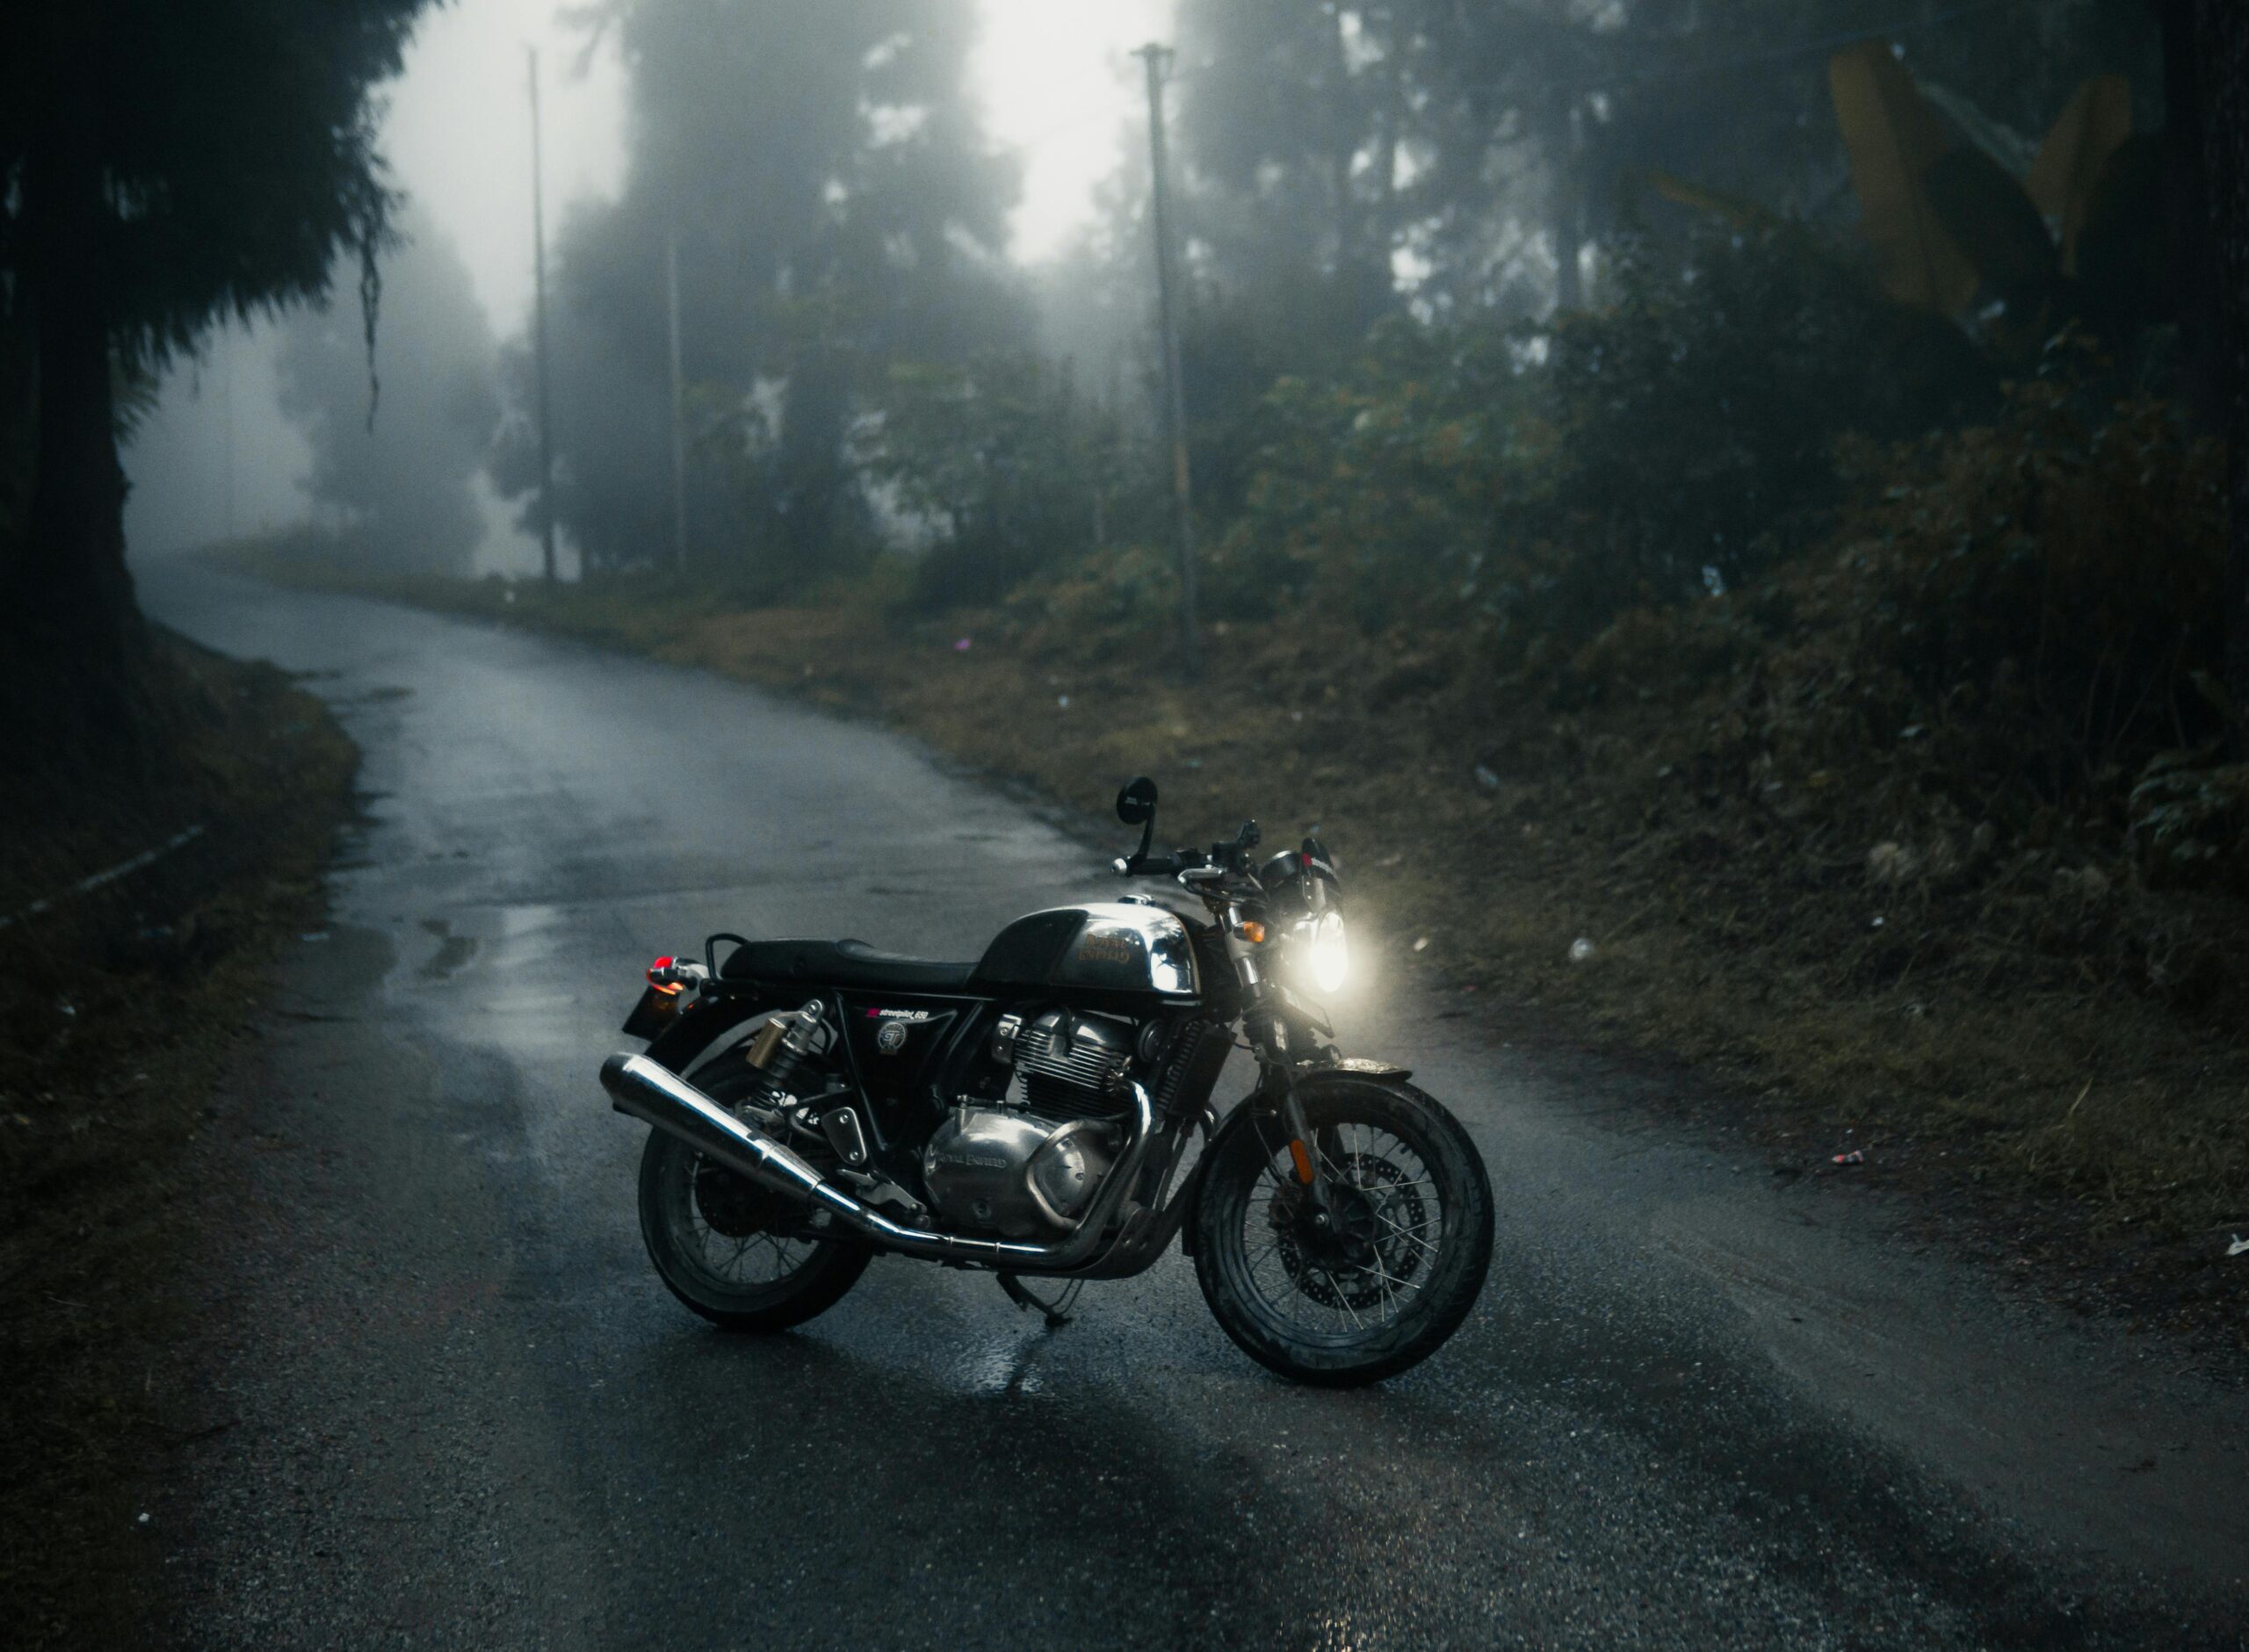 Ein Motorrad bis 500 ccm geparkt auf einer nebligen Straße, umgeben von einer mystischen Waldlandschaft, beleuchtet die Szene mit seinem Scheinwerfer und lädt zu einer stimmungsvollen Fahrt ein